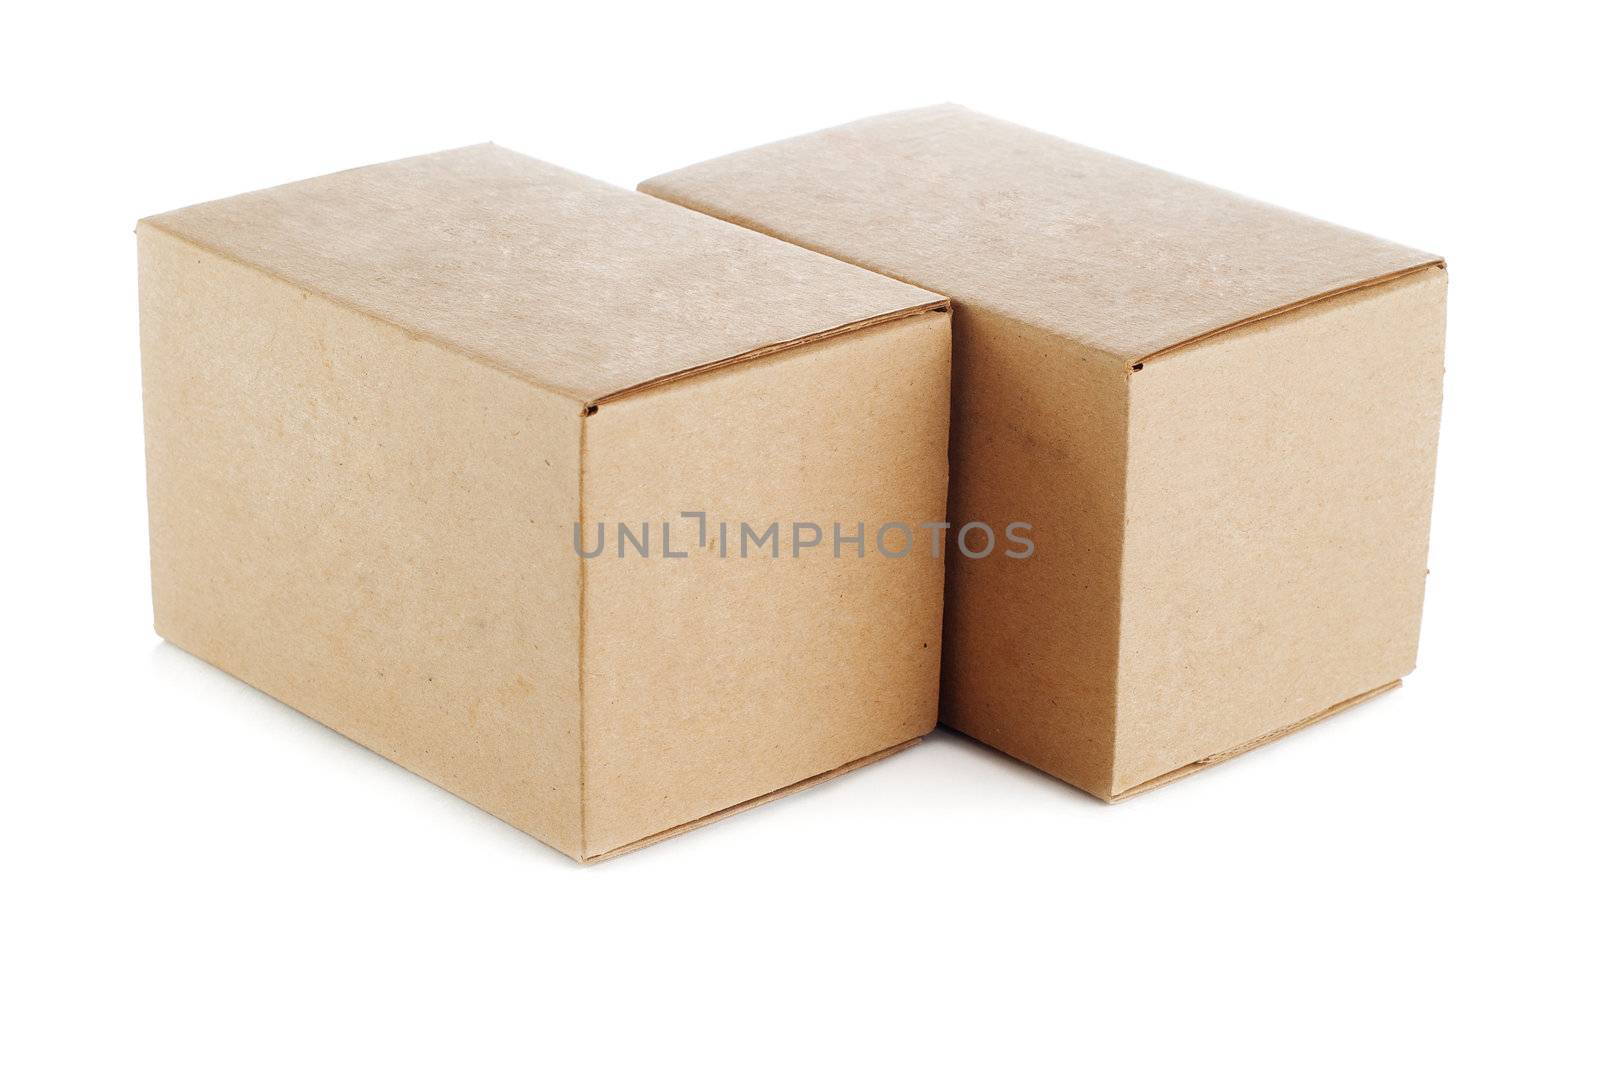 cardboard boxes by GennadiyShel